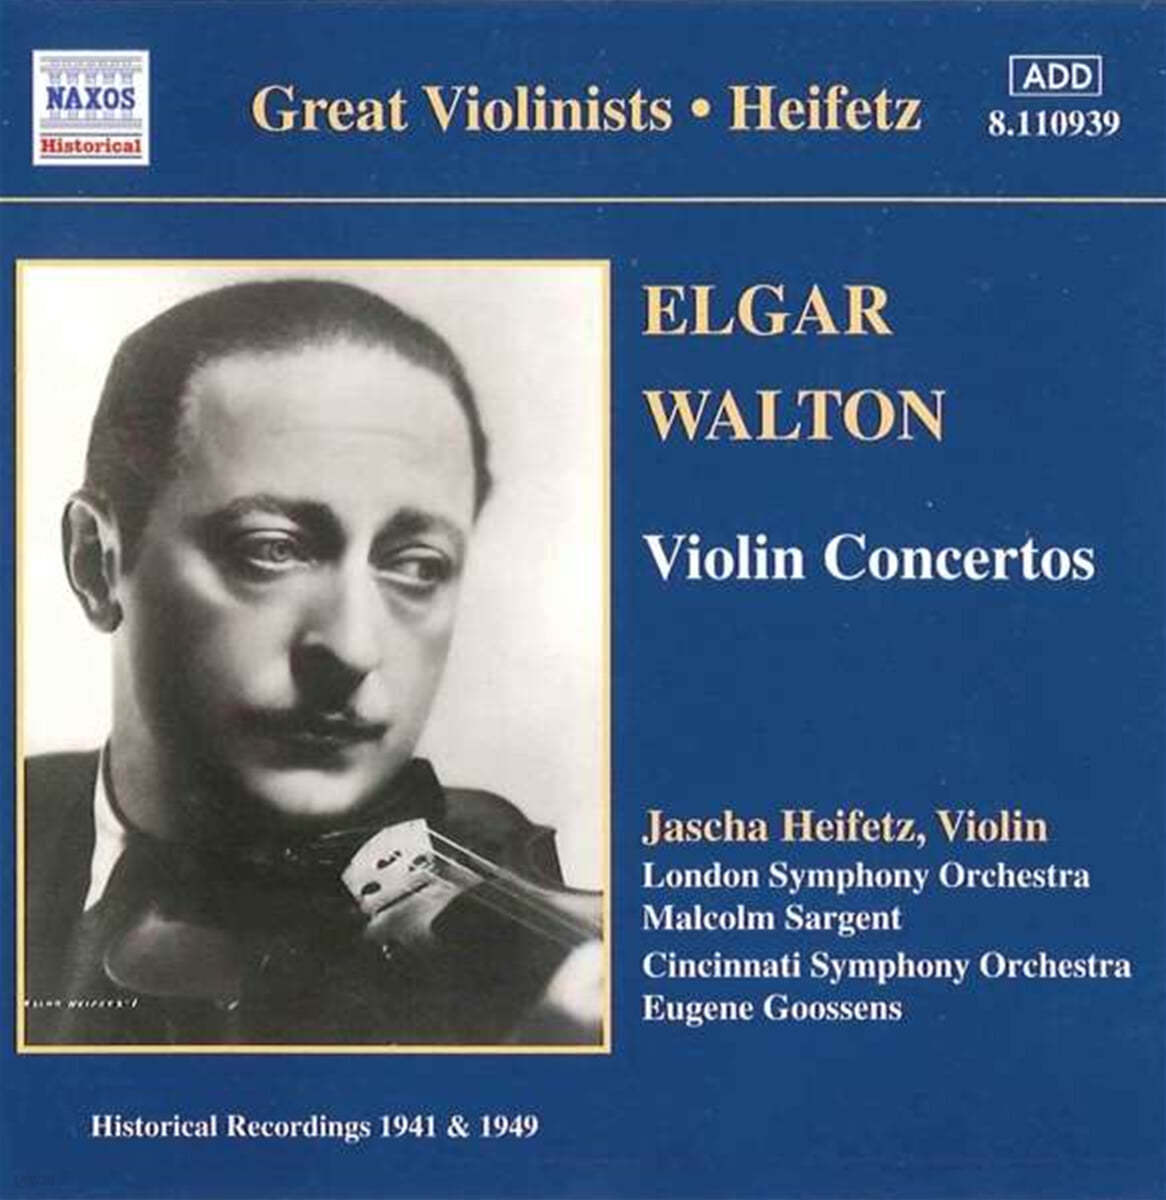 Jascha Heifetz 엘가 / 월톤: 바이올린 협주곡 - 야사 하이페츠 (Elgar: Violin Concerto Op.81 / Walton: Violin Concerto in B minor) 